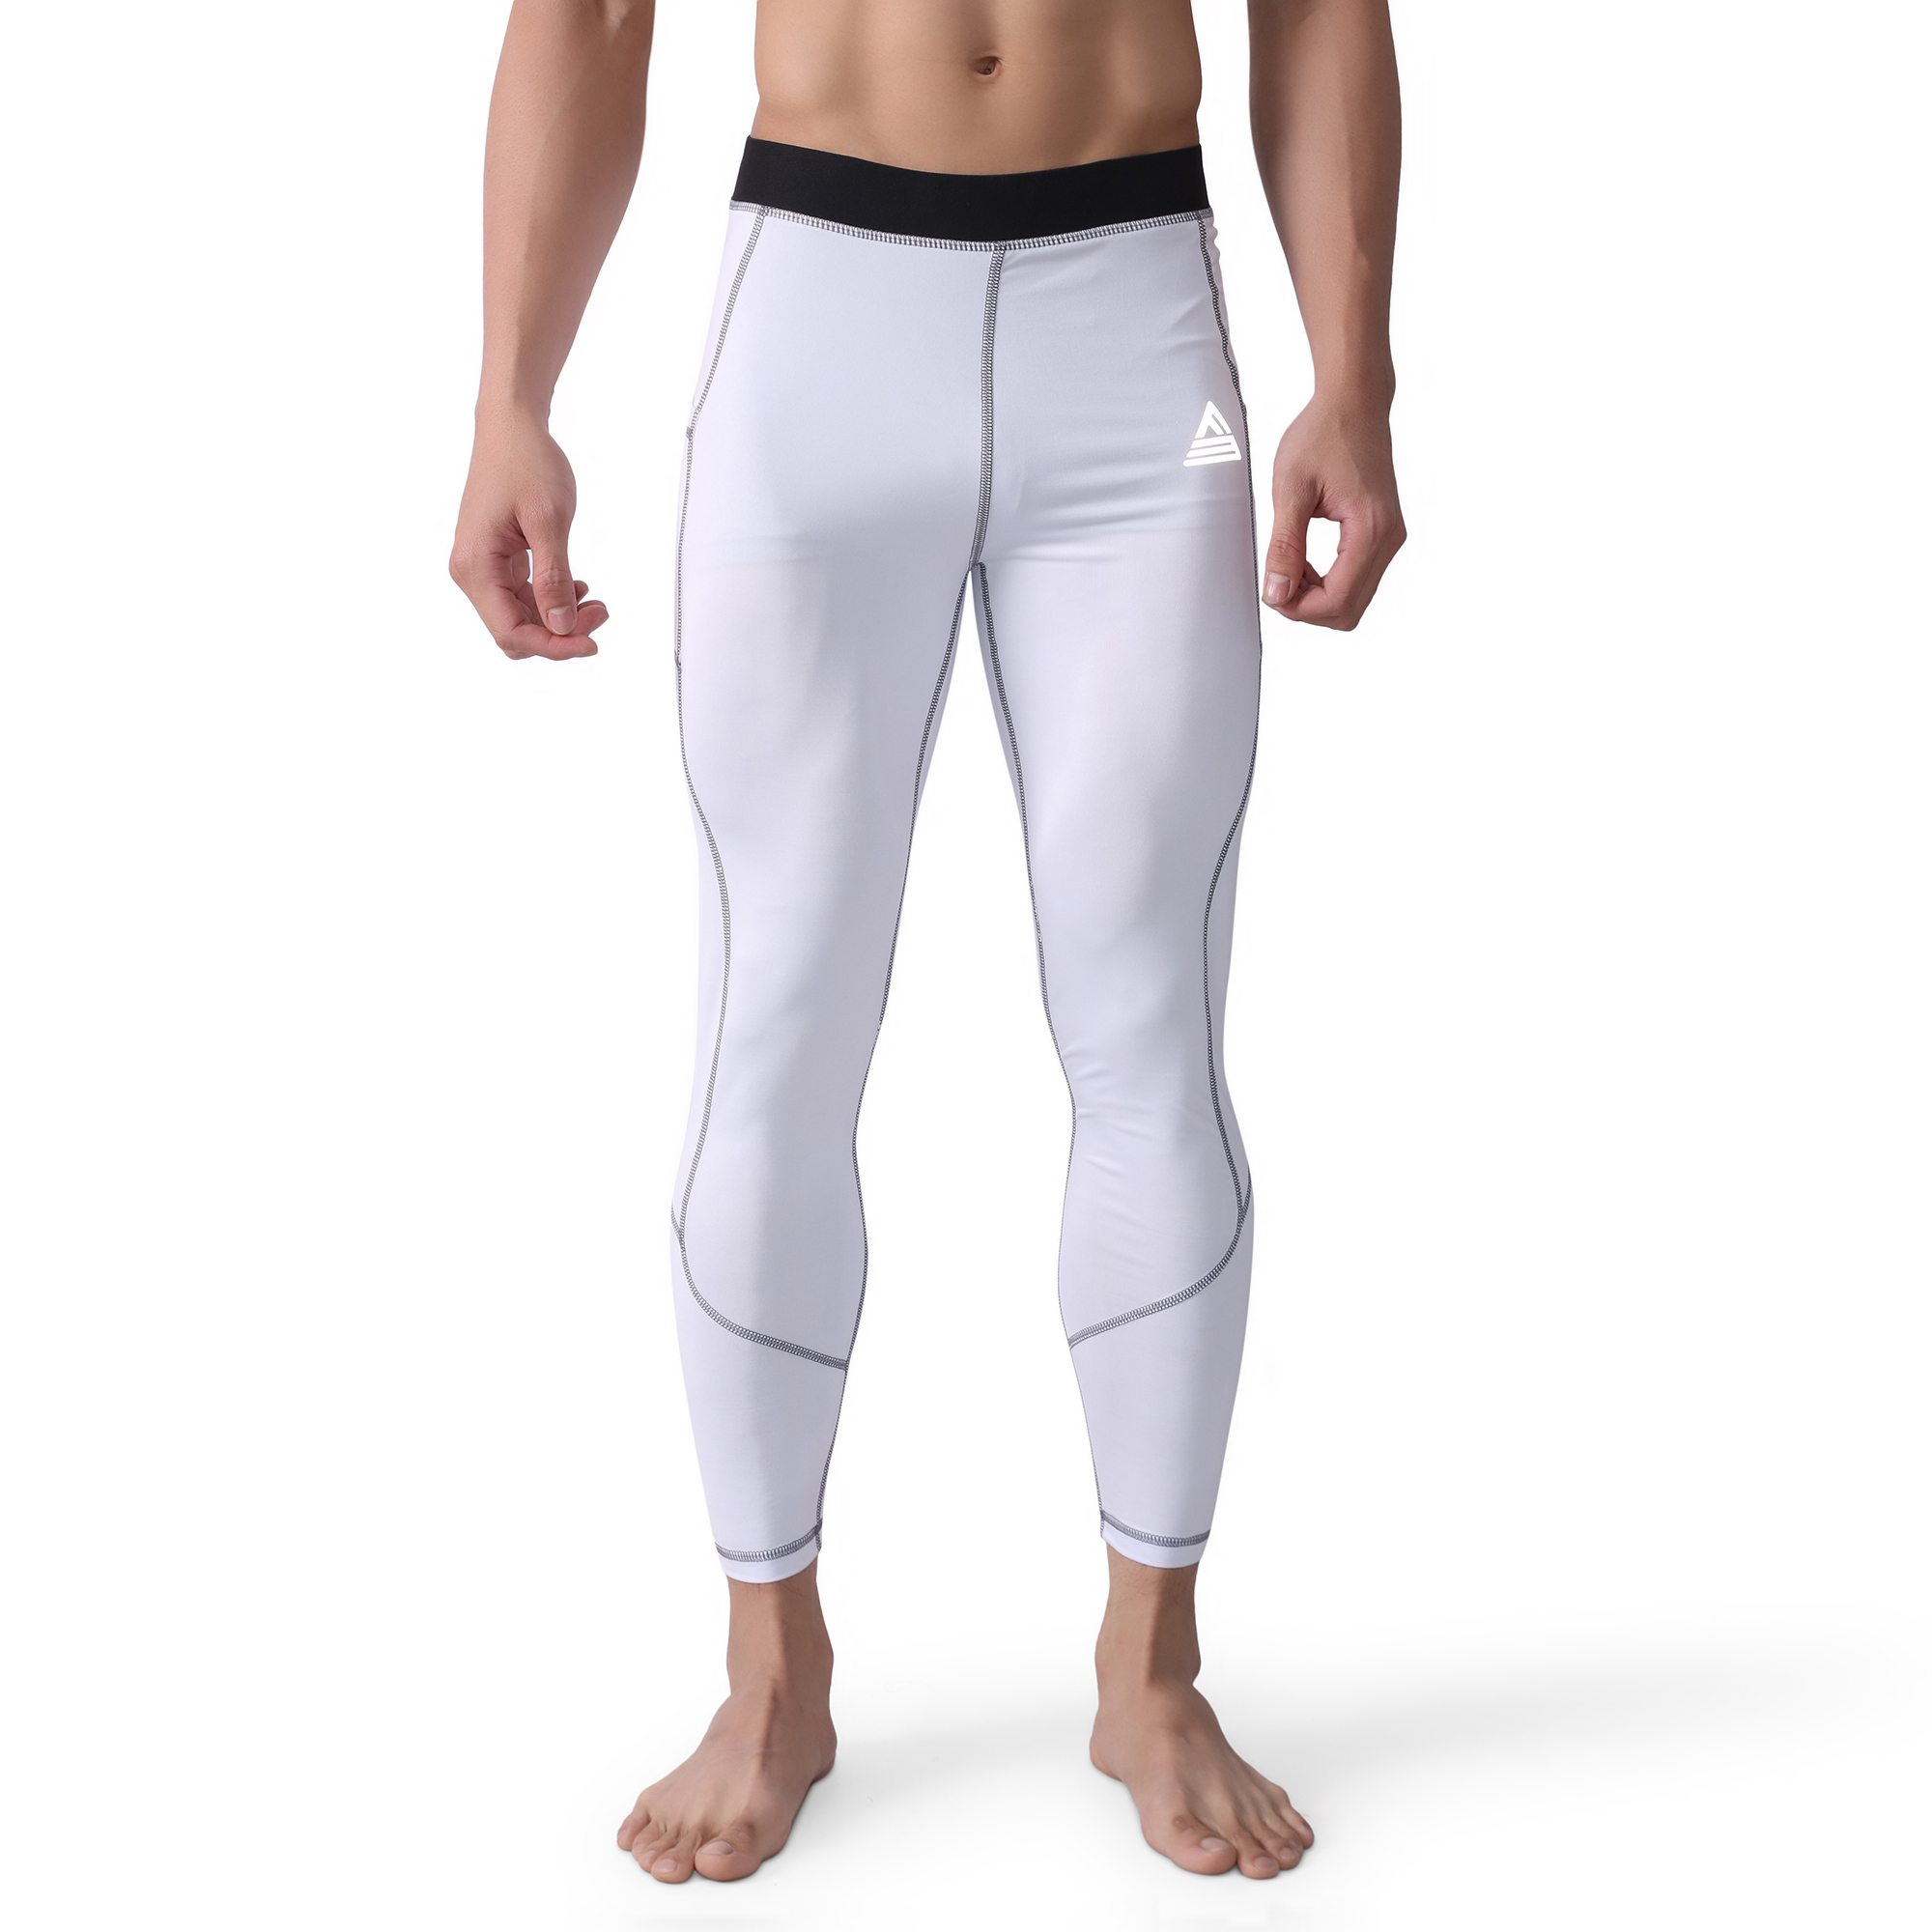 Quần thể thao nam Fitme Body Compression chất liệu quần giữ nhiệt co giãn siết cơ cao cấp - Đen Đỏ